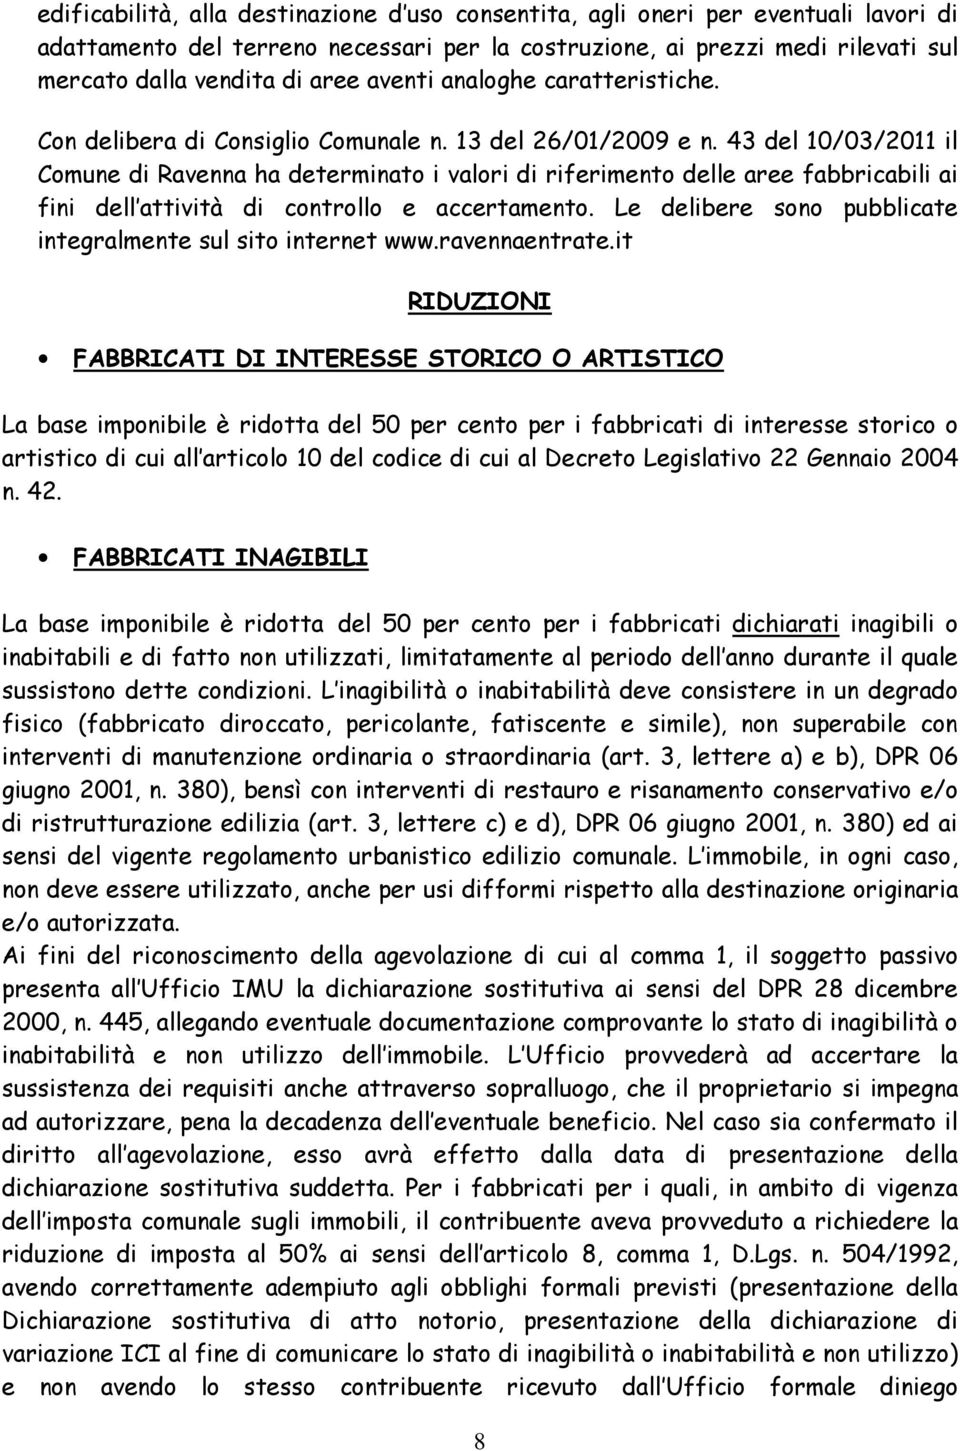 43 del 10/03/2011 il Comune di Ravenna ha determinato i valori di riferimento delle aree fabbricabili ai fini dell attività di controllo e accertamento.